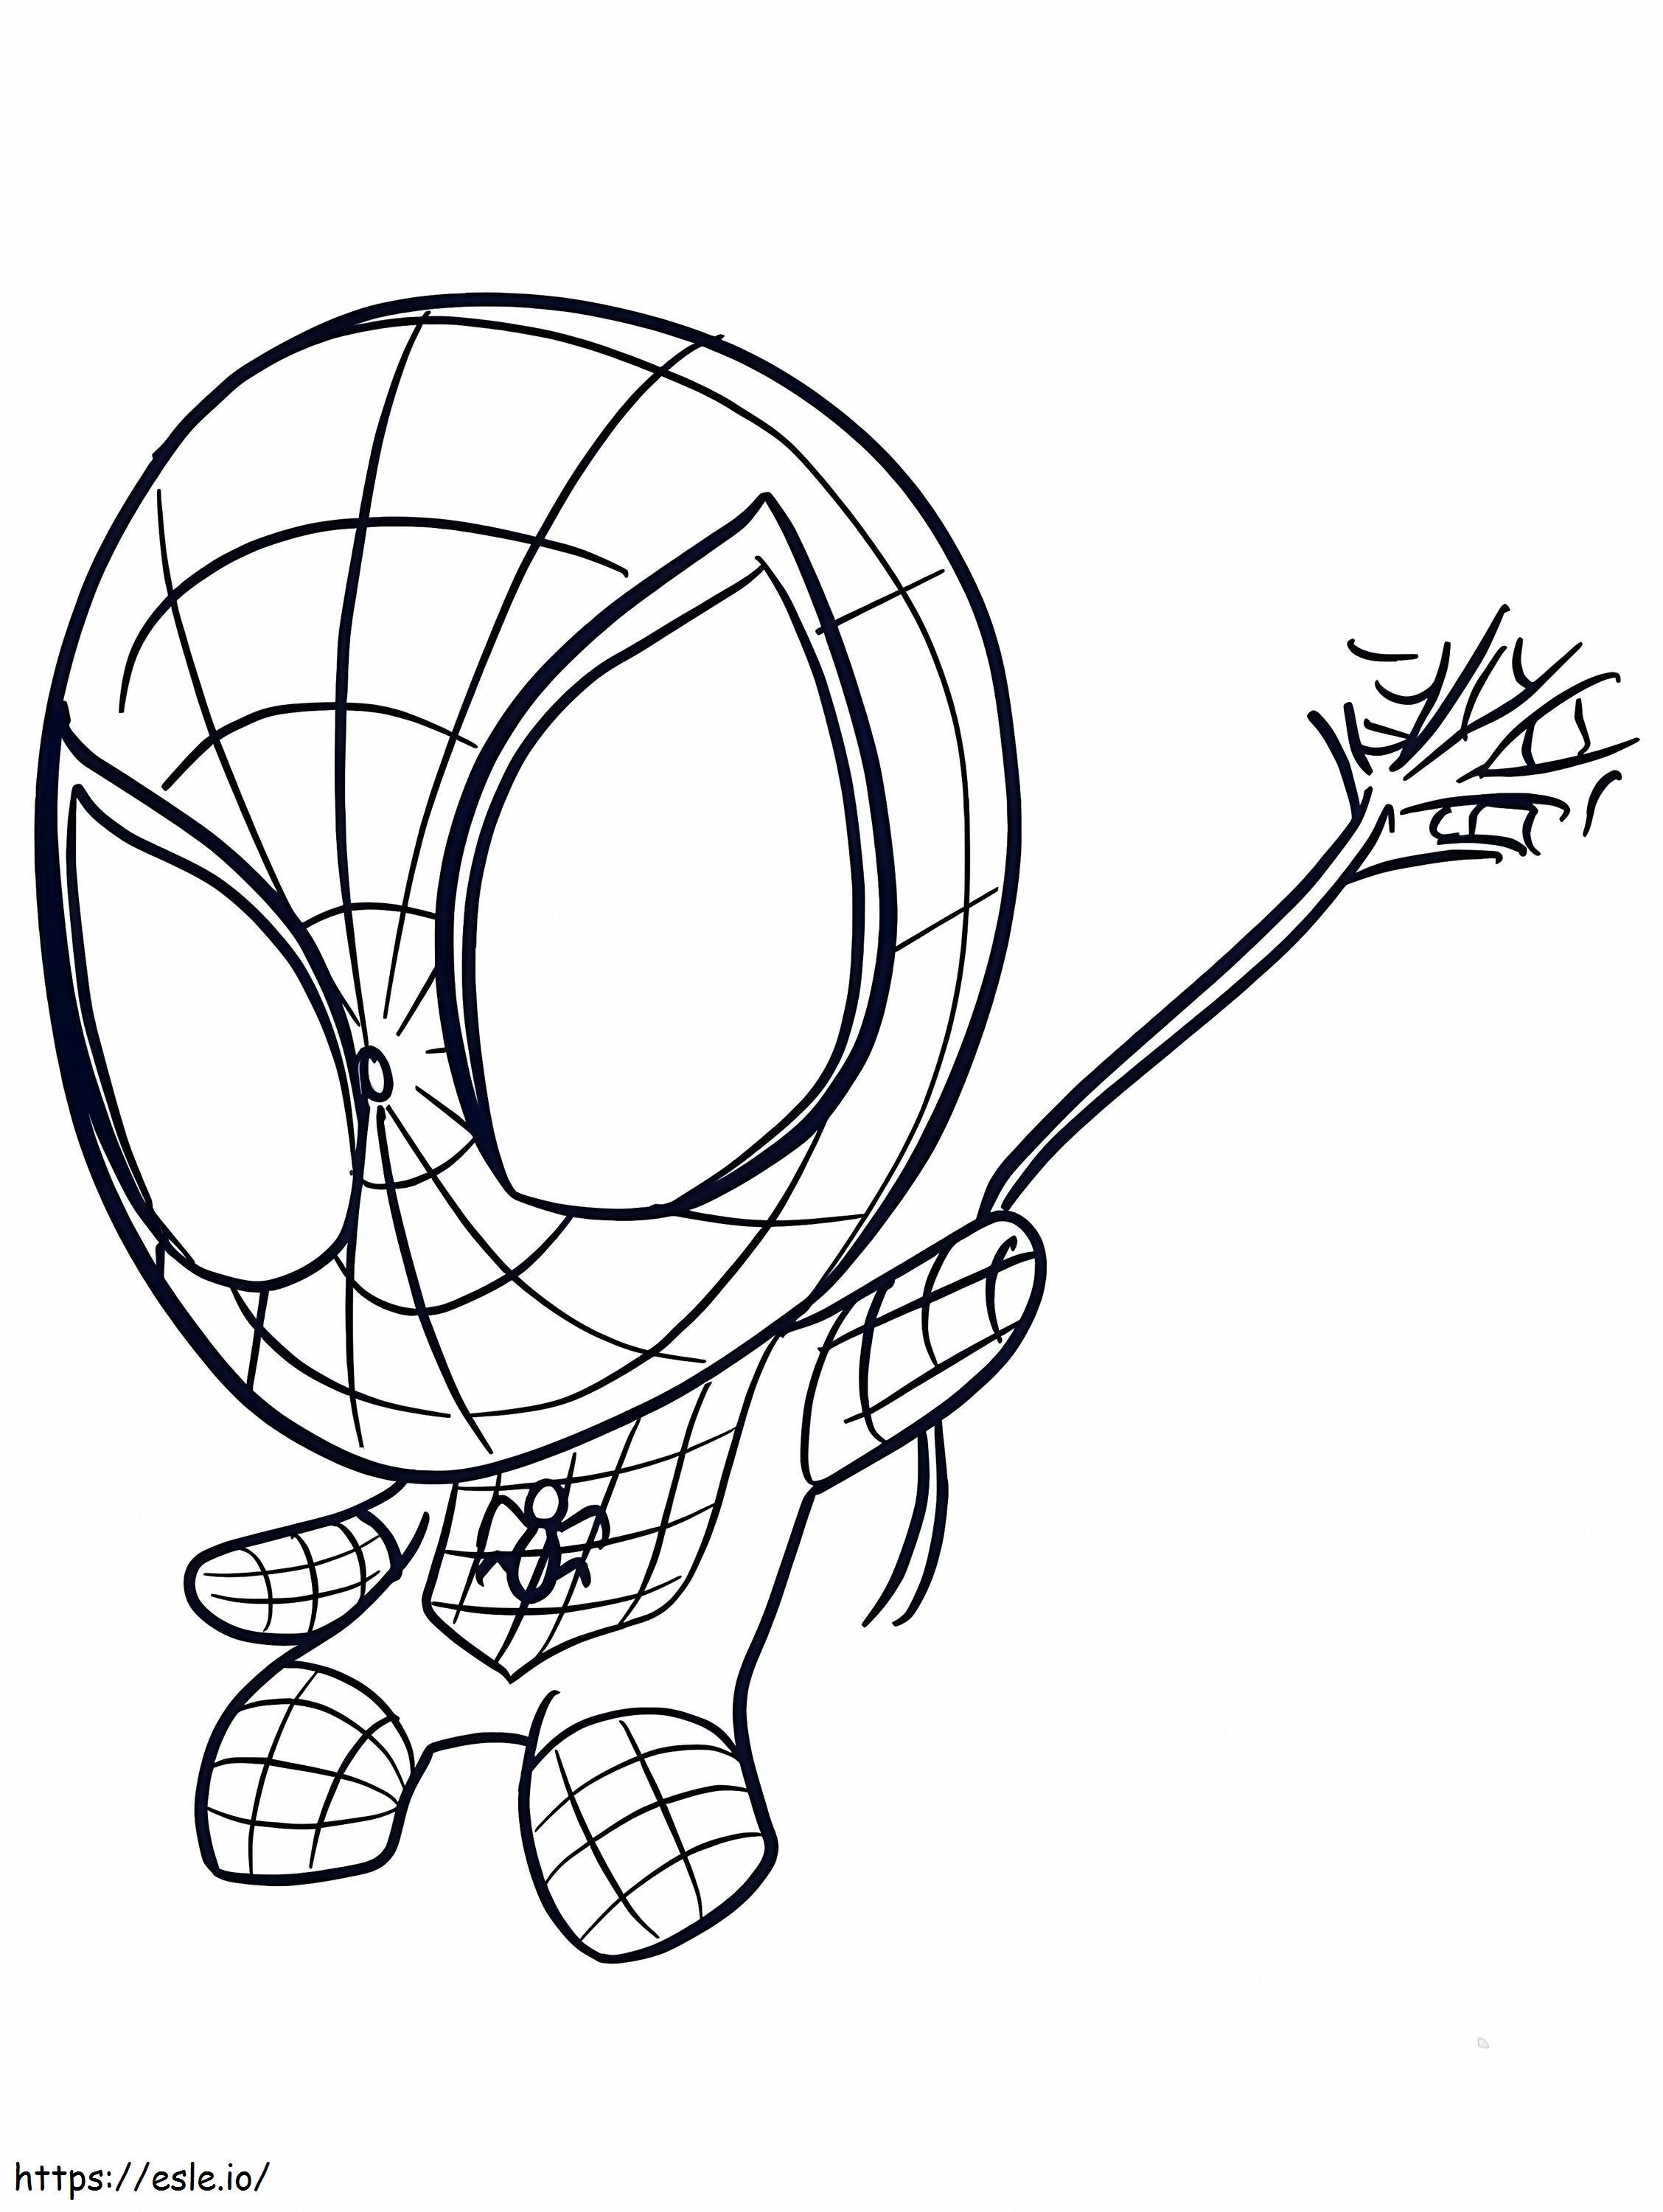 Spiderman Mignon para colorear